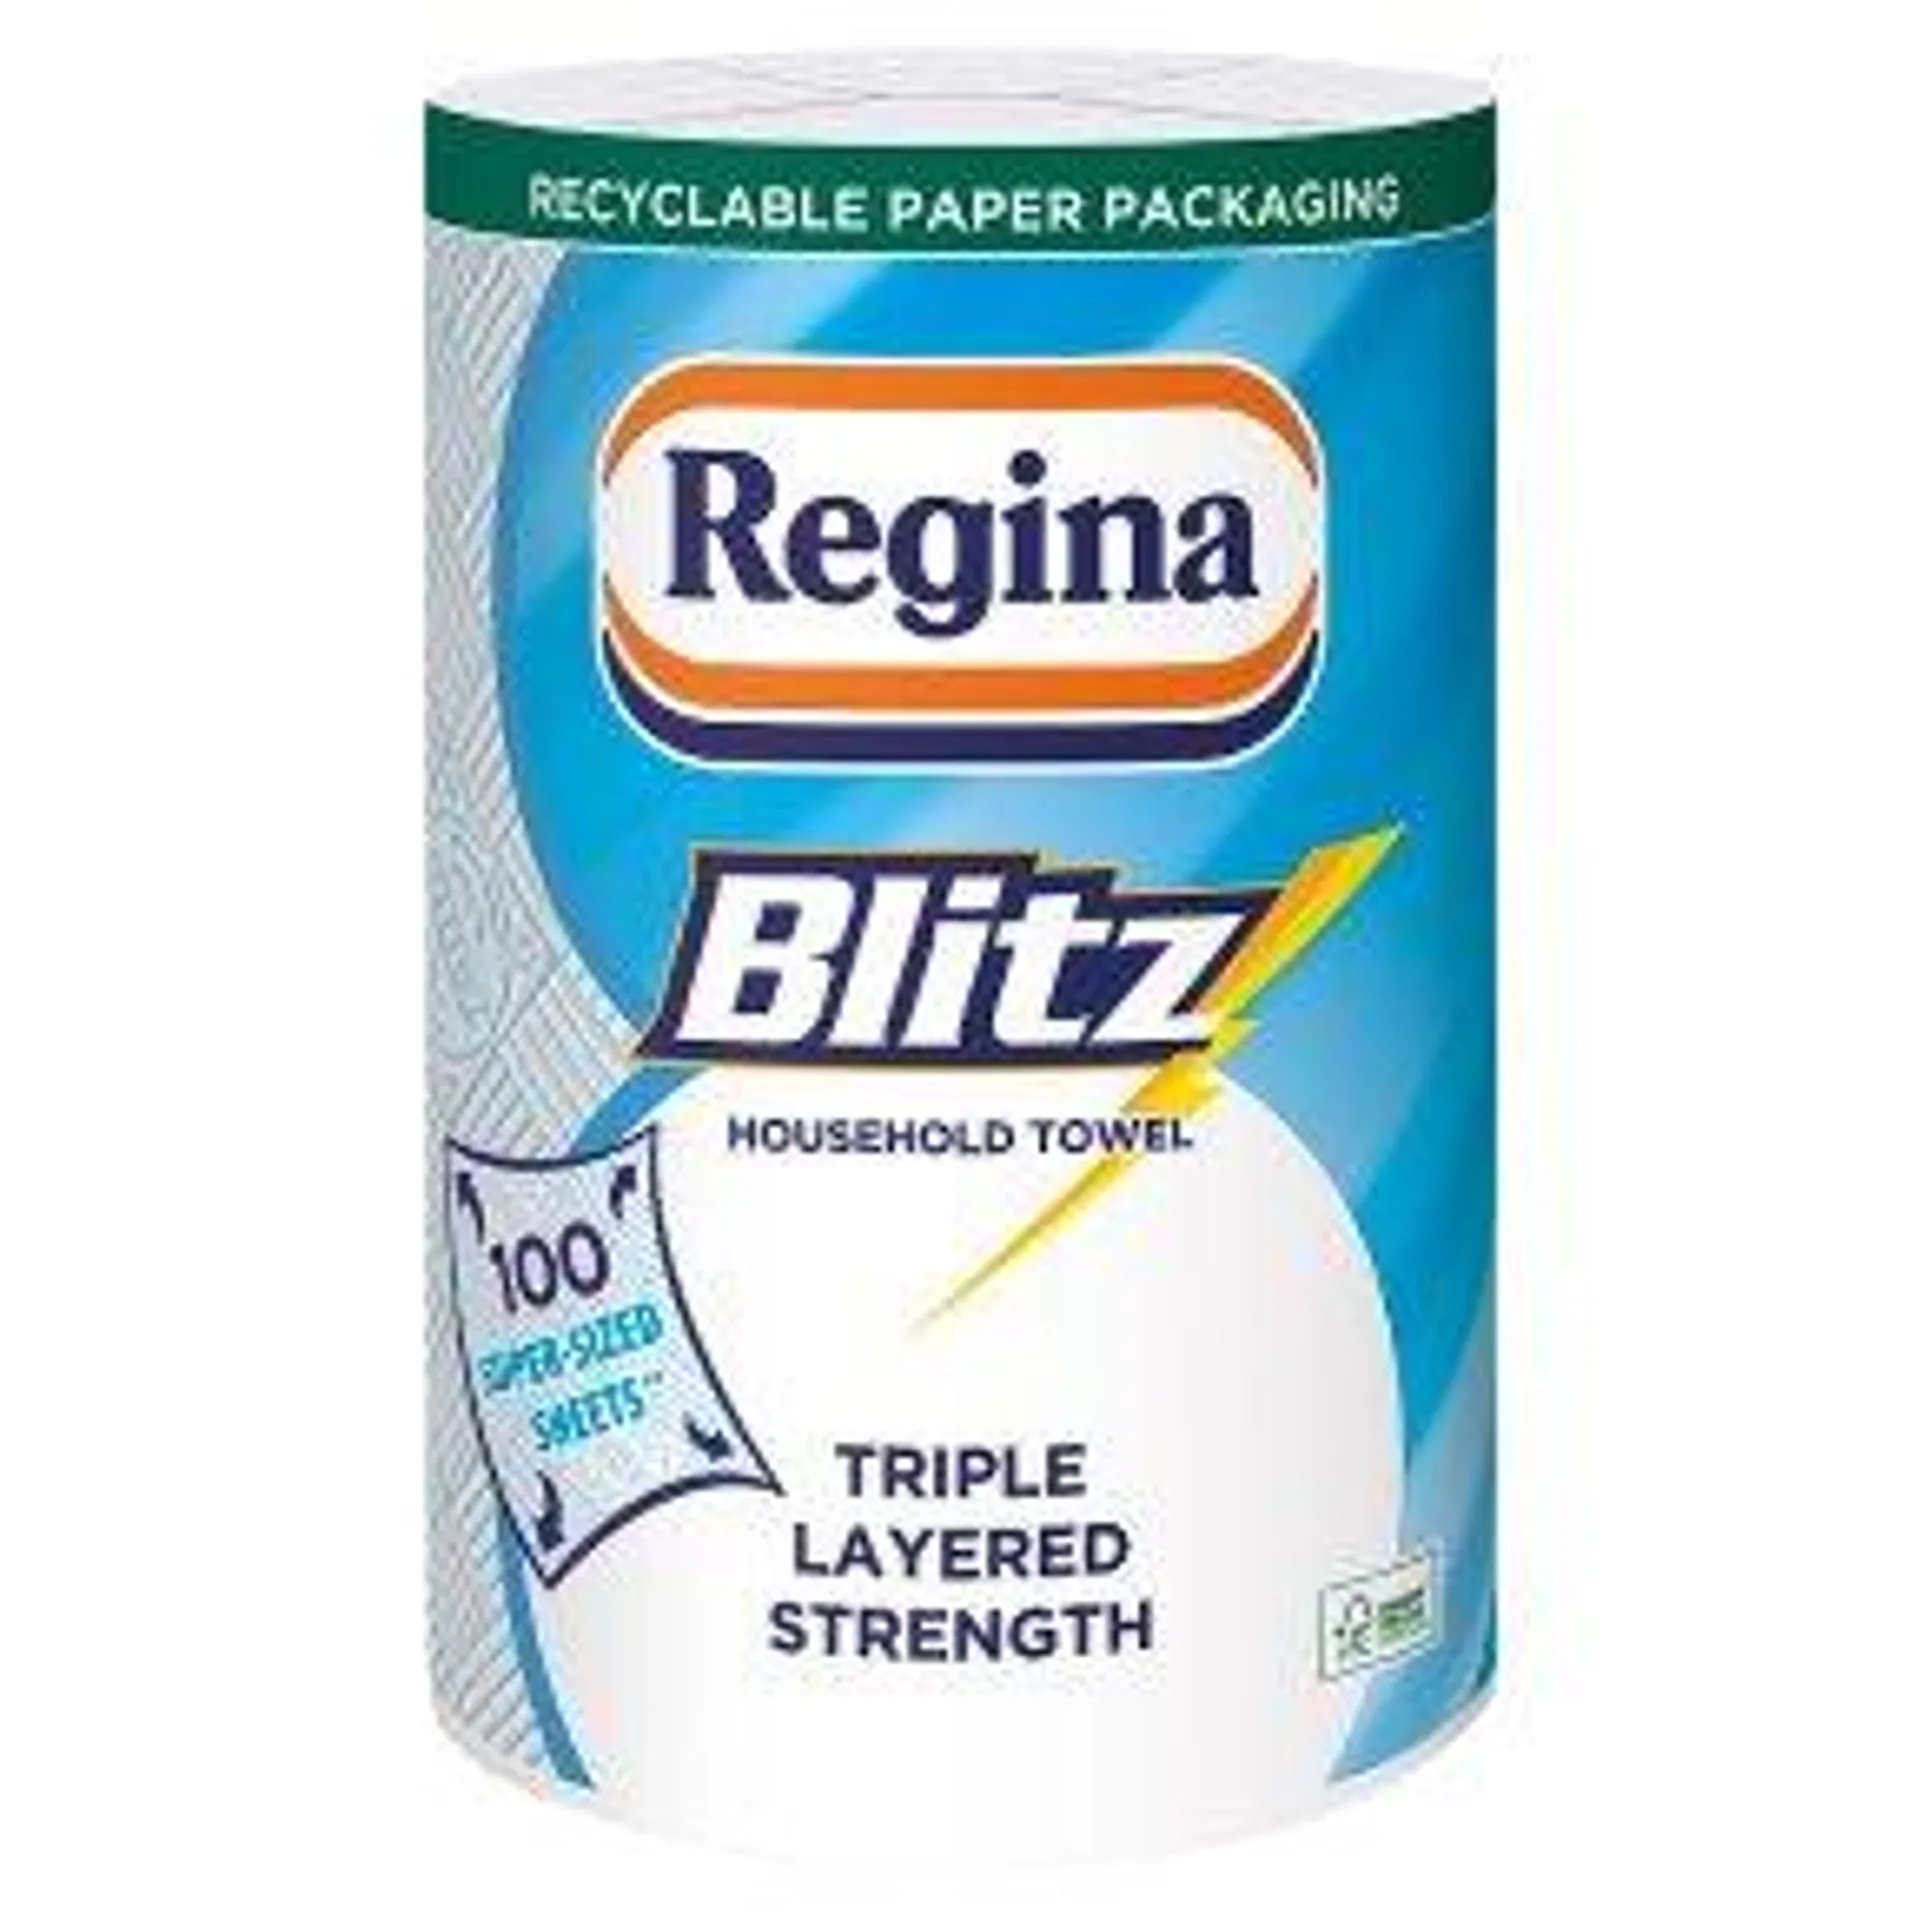 Regina blitz 3 ply towels